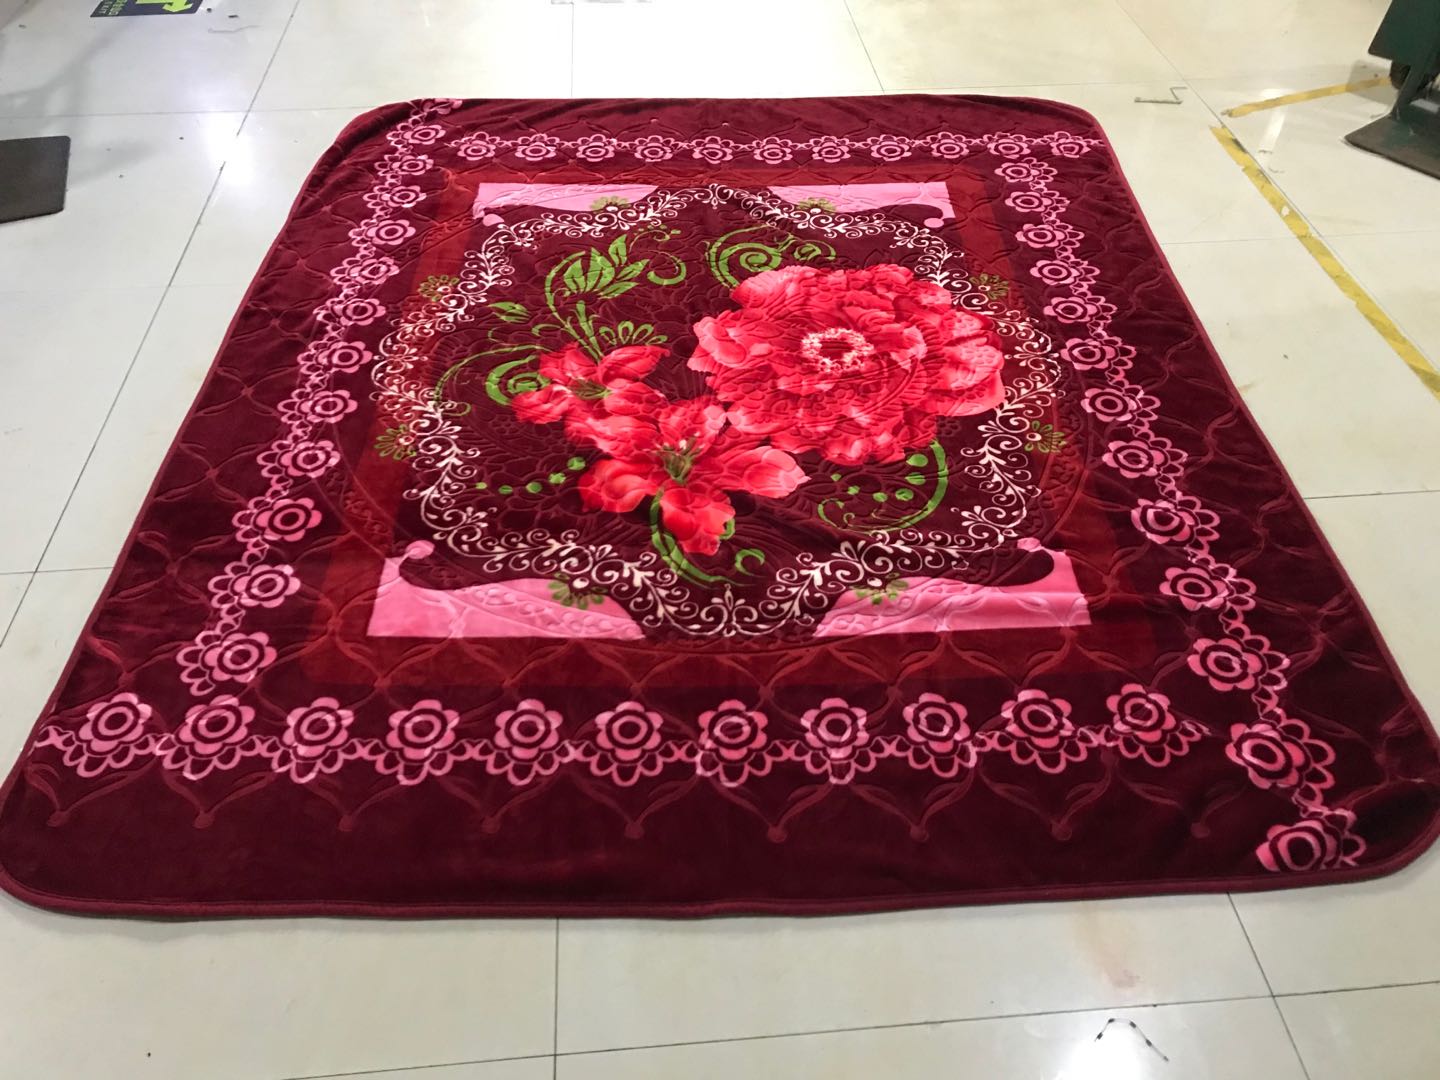 厂家批发外贸毛毯绒毯法兰绒珊瑚绒拉舍尔毛毯尺寸可定制花色82